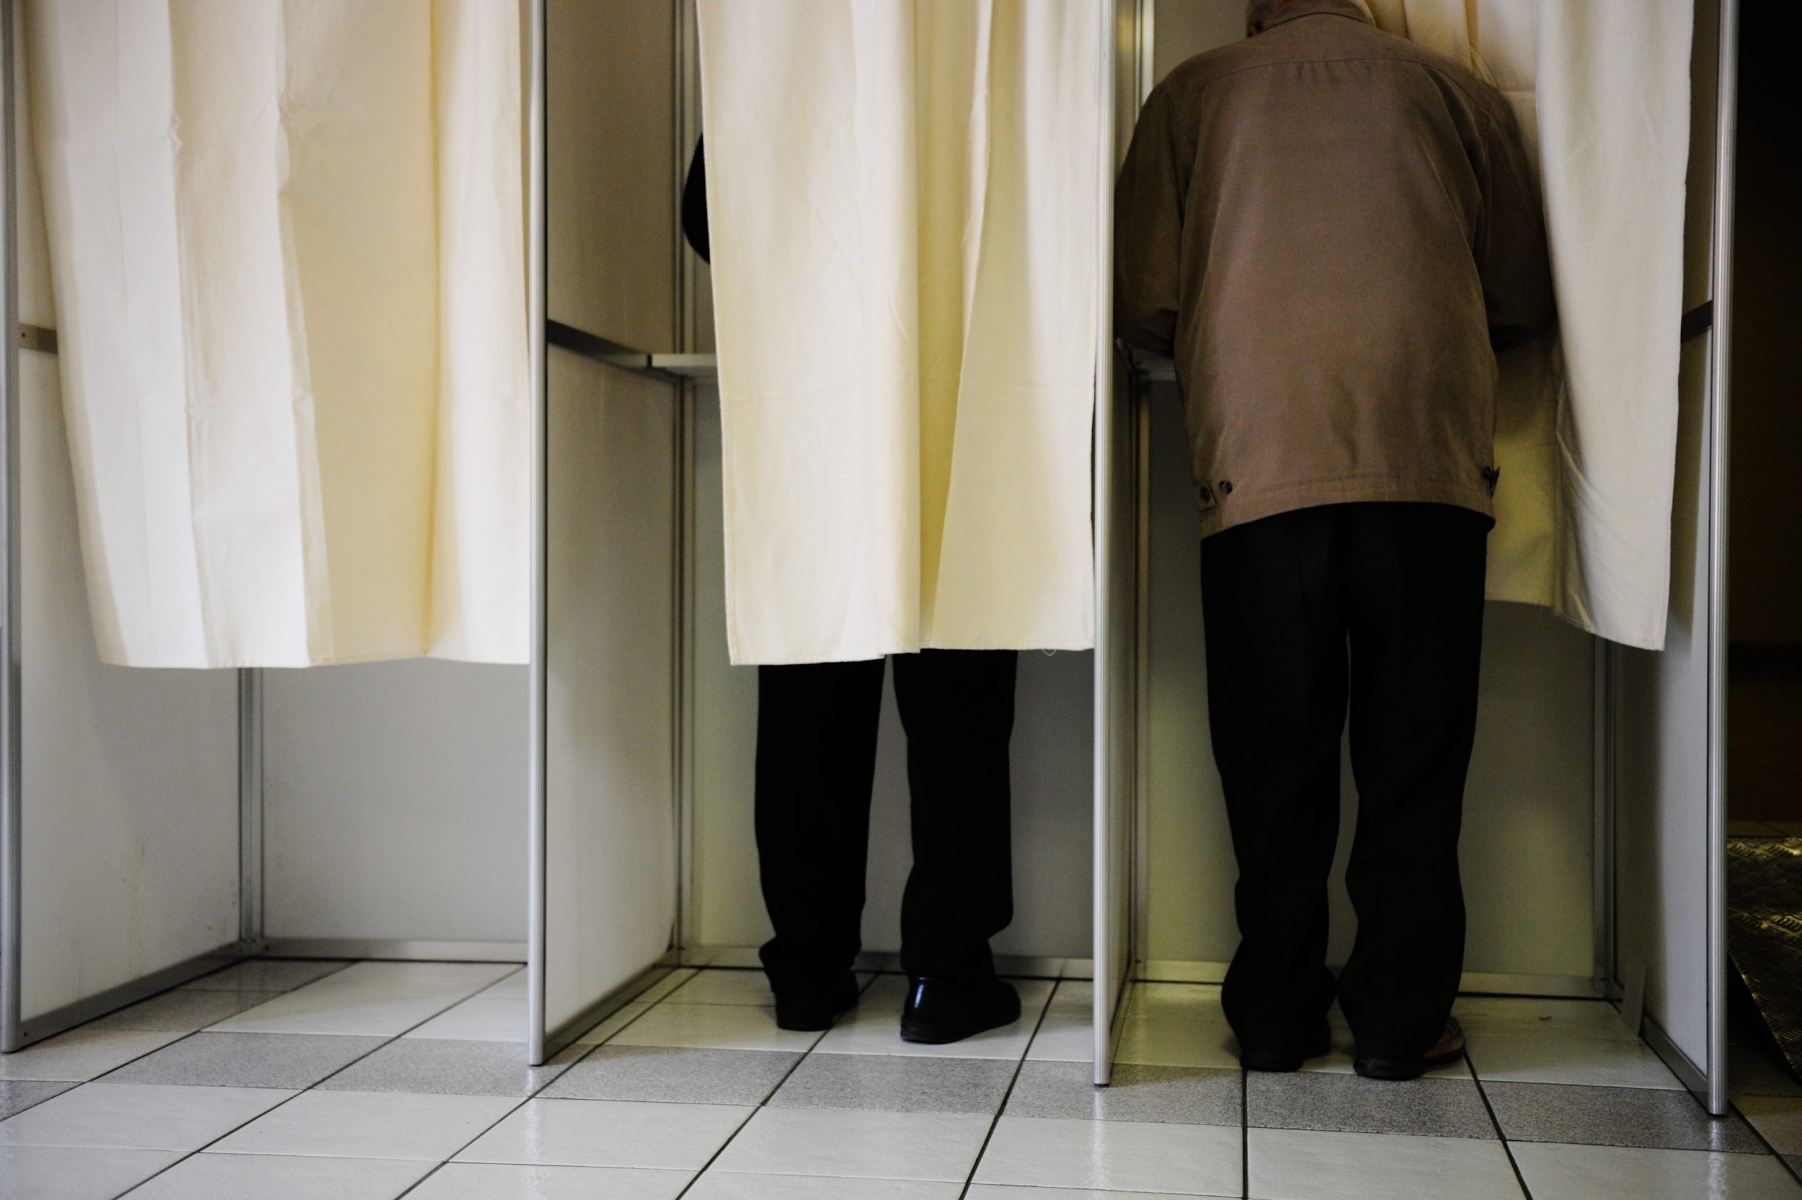 Une fraude électorale a eu lieu lors des dernières élections cantonales valaisannes. Faut-il revoir la répartition des sièges ou non? La question demeure.